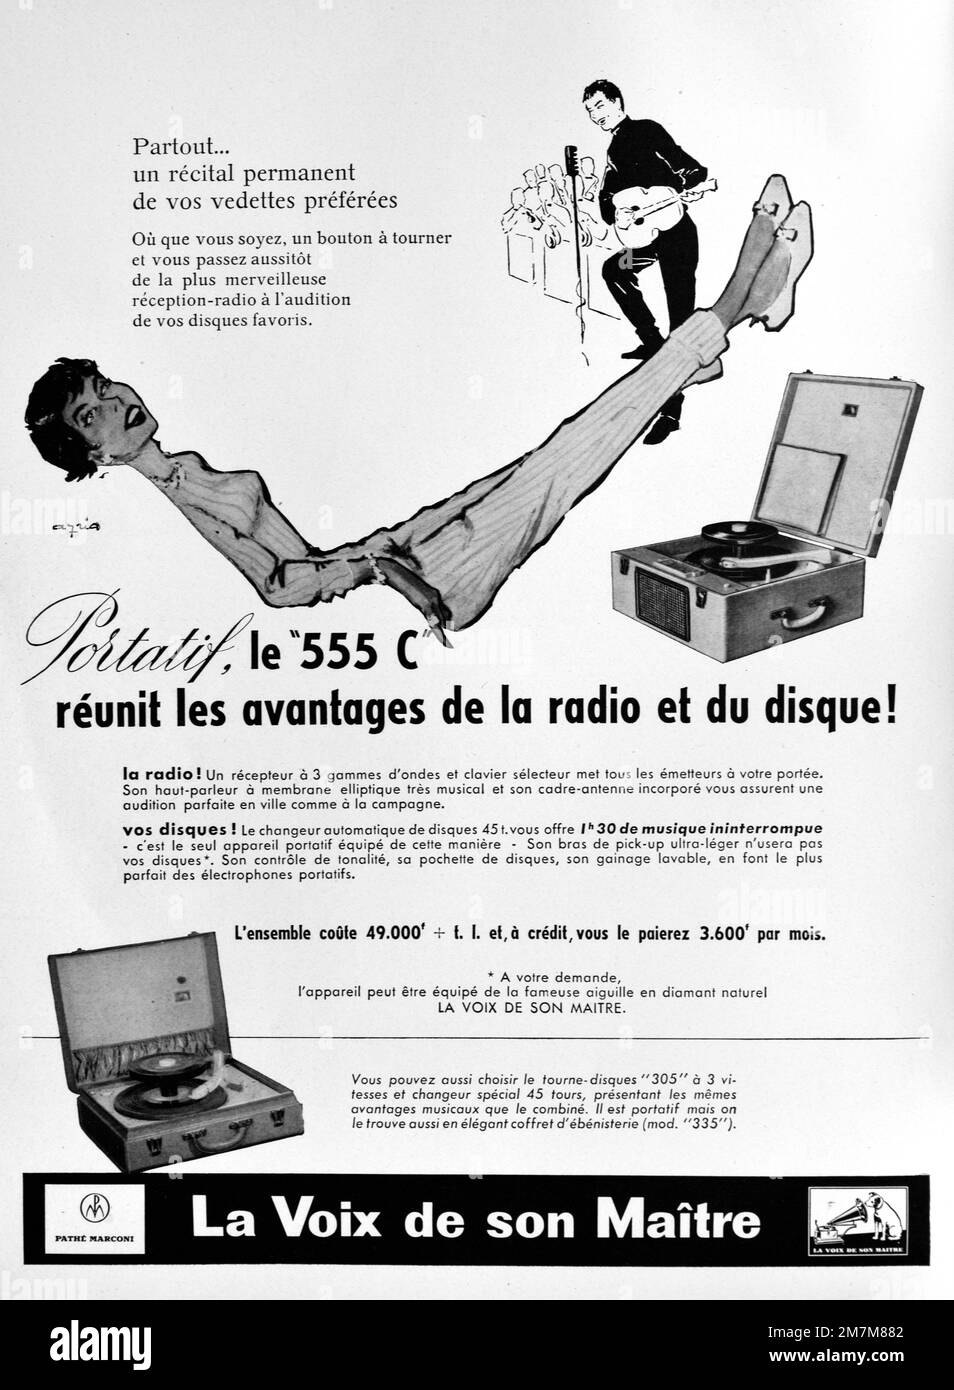 Vintage o antiguo anuncio, anuncio, publicidad o ilustración para un portátil His Masters Voice Record Player modelo 555 C anuncio 1956. Ilustrado con 1950s Mujer relajante y escuchando música. Foto de stock